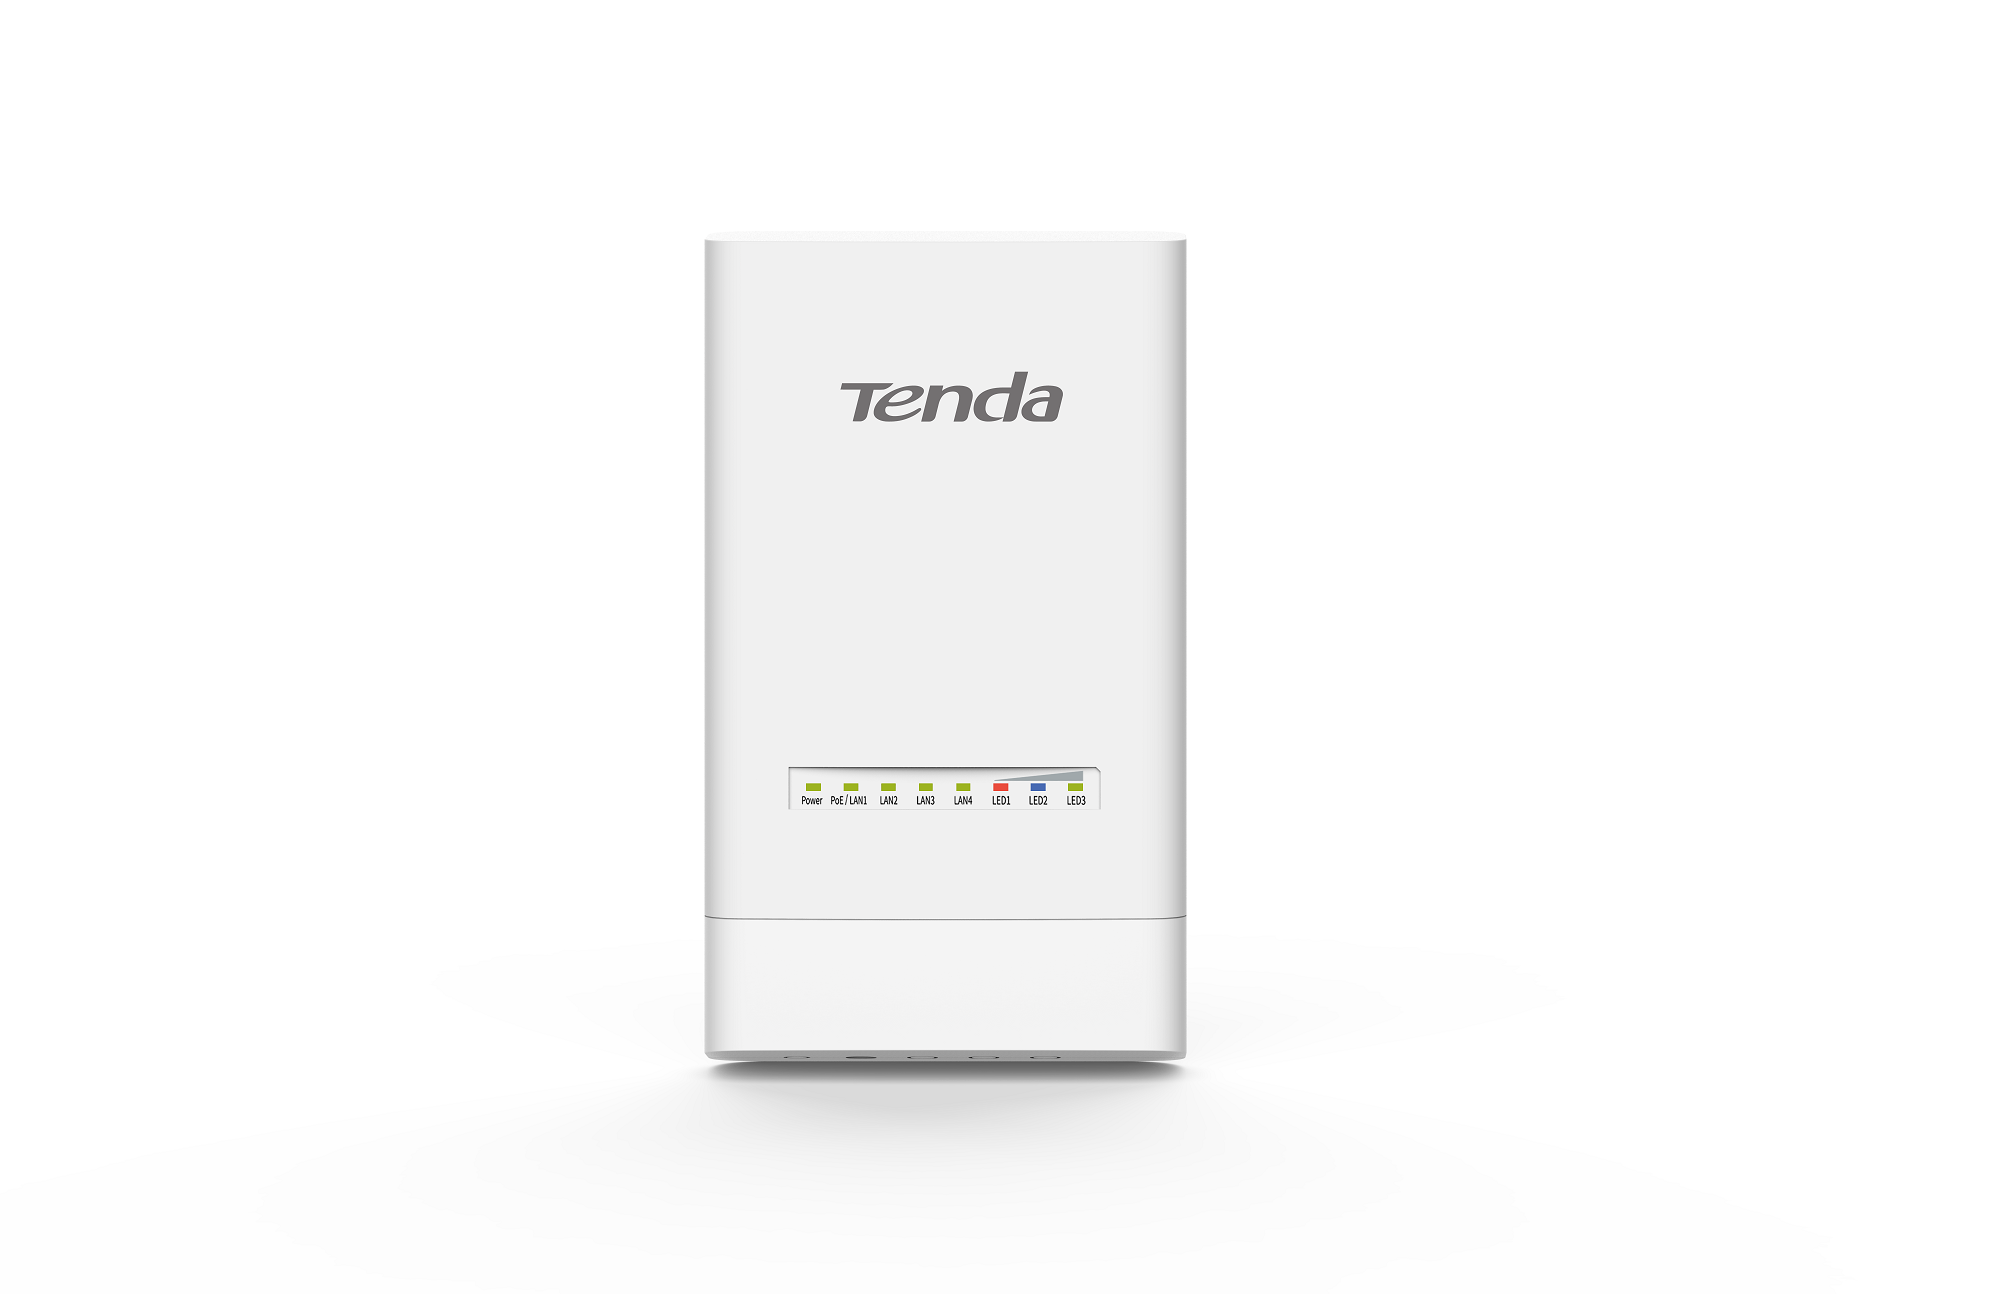 Tenda - all for better networking